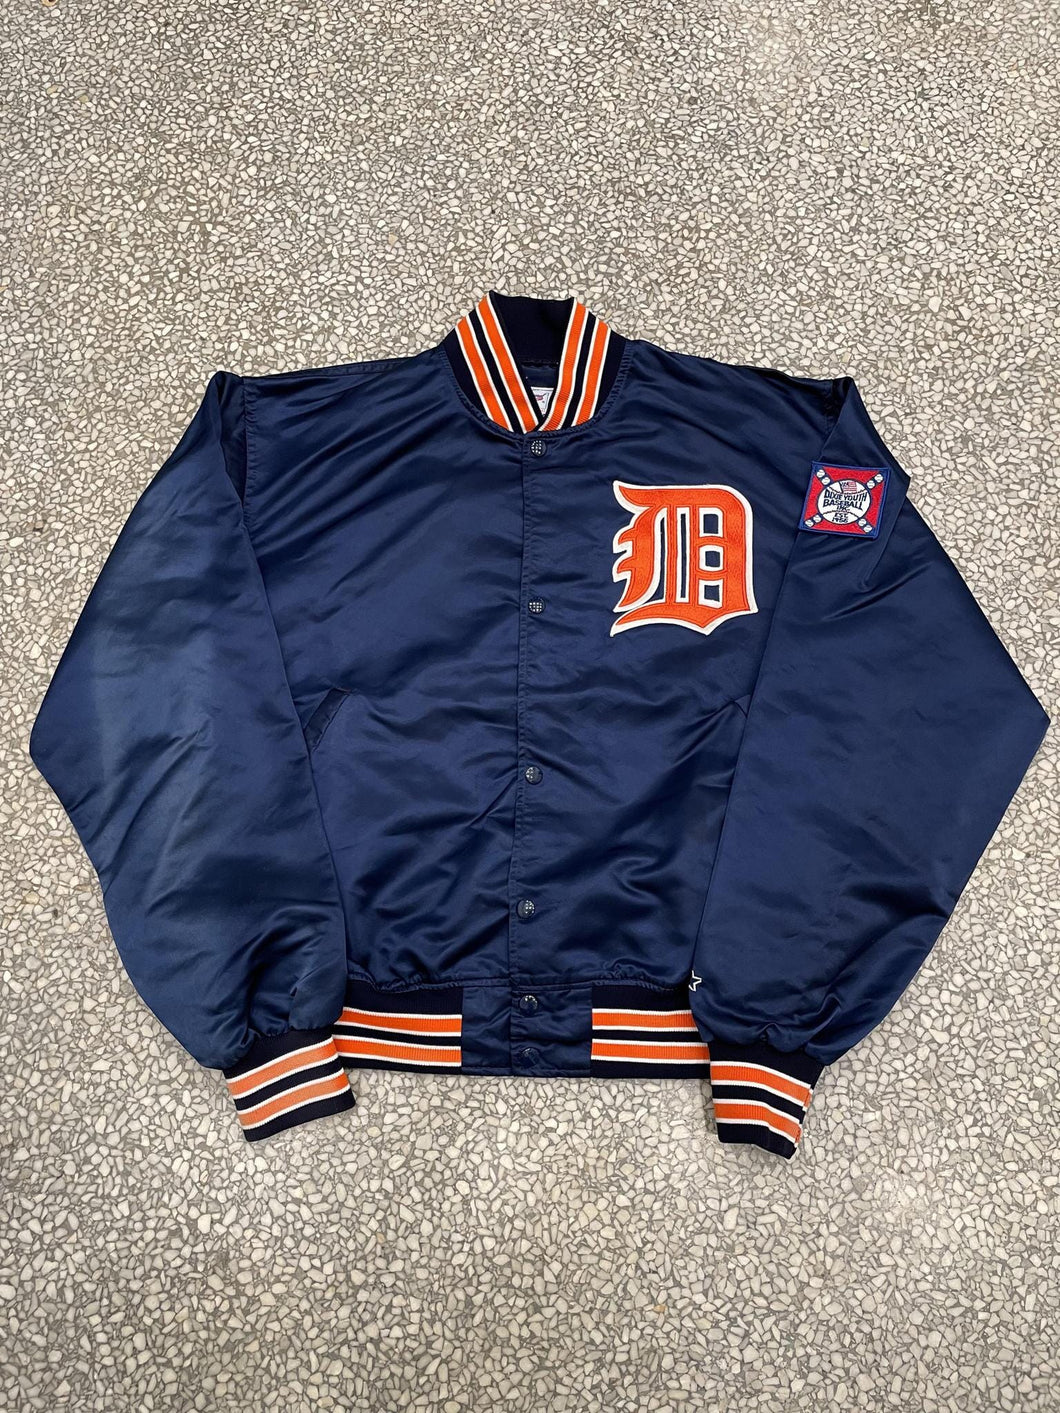 Detroit Tigers Vintage 90s Old English D Starter Satin Bomber Jacket ABC Vintage 